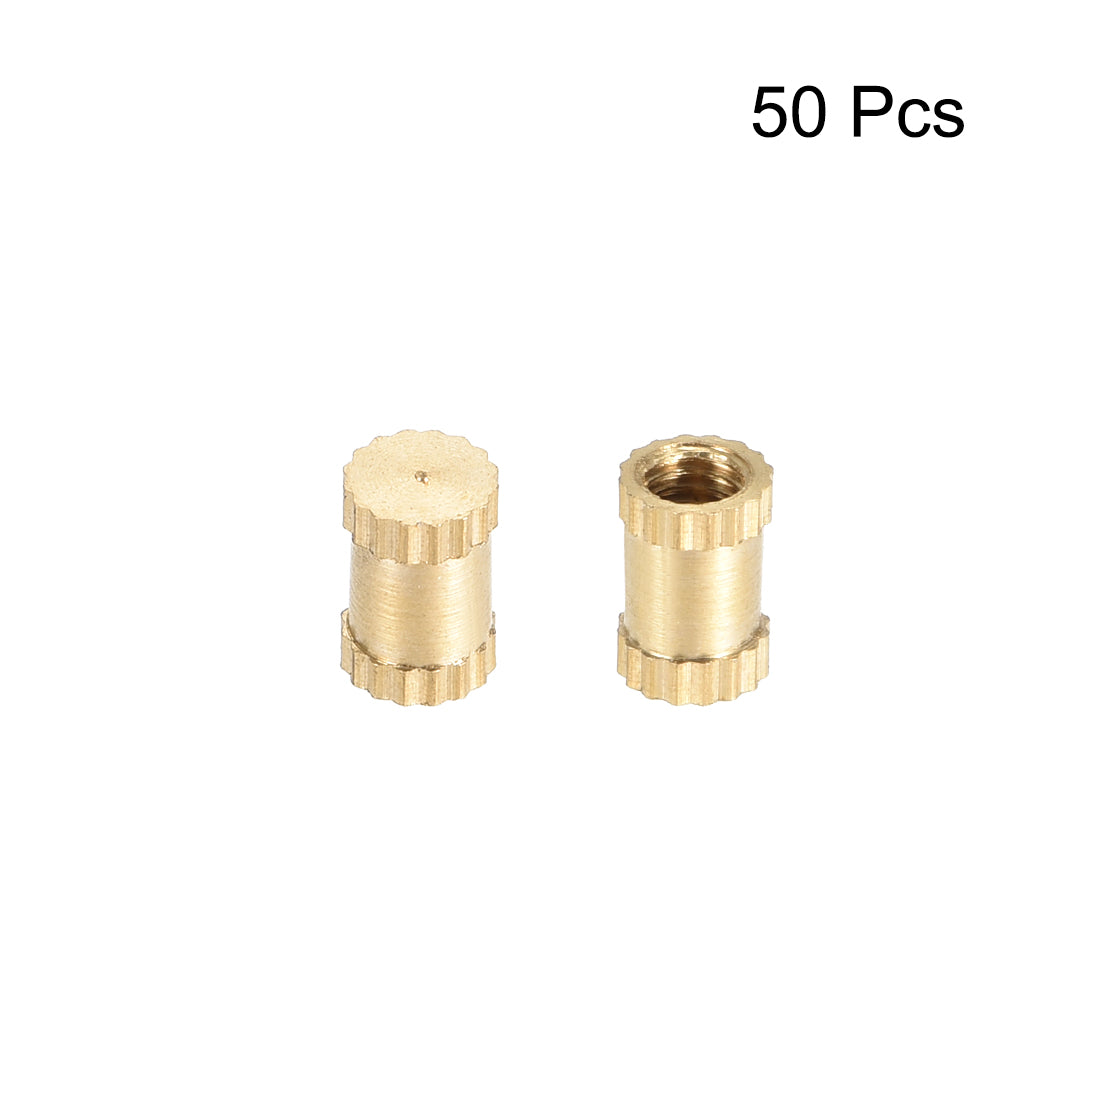 uxcell Uxcell Knurled Insert Nuts, M3 x 6mm(L) x 4mm(OD) Female Thread Brass Embedment Assortment Kit, 50 Pcs